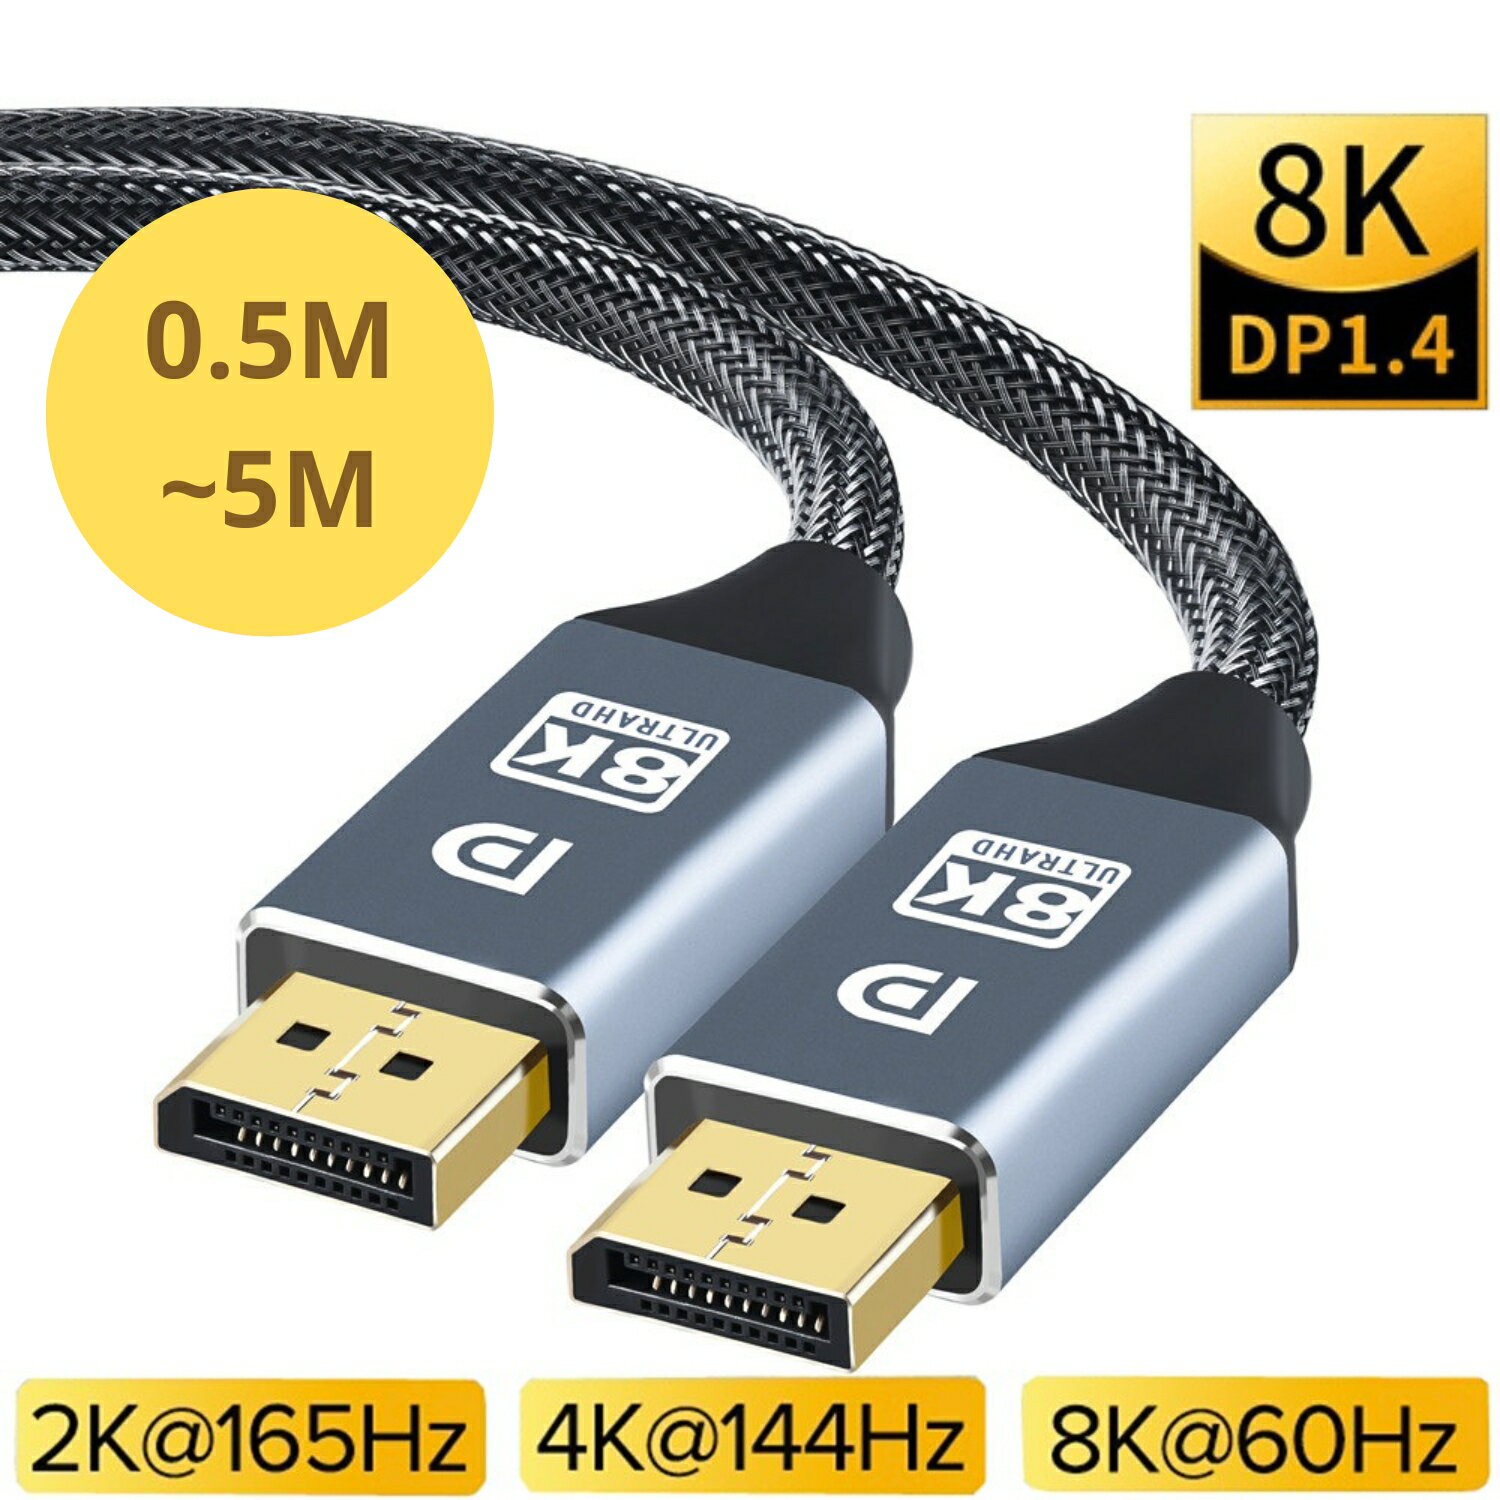 [3玉山網] DP線 1.4 公對公 連接線 Displayport 8K UHD 尼龍編織線 鍍金接頭鋁合金外殼 4K 144Hz (DP28)PP6